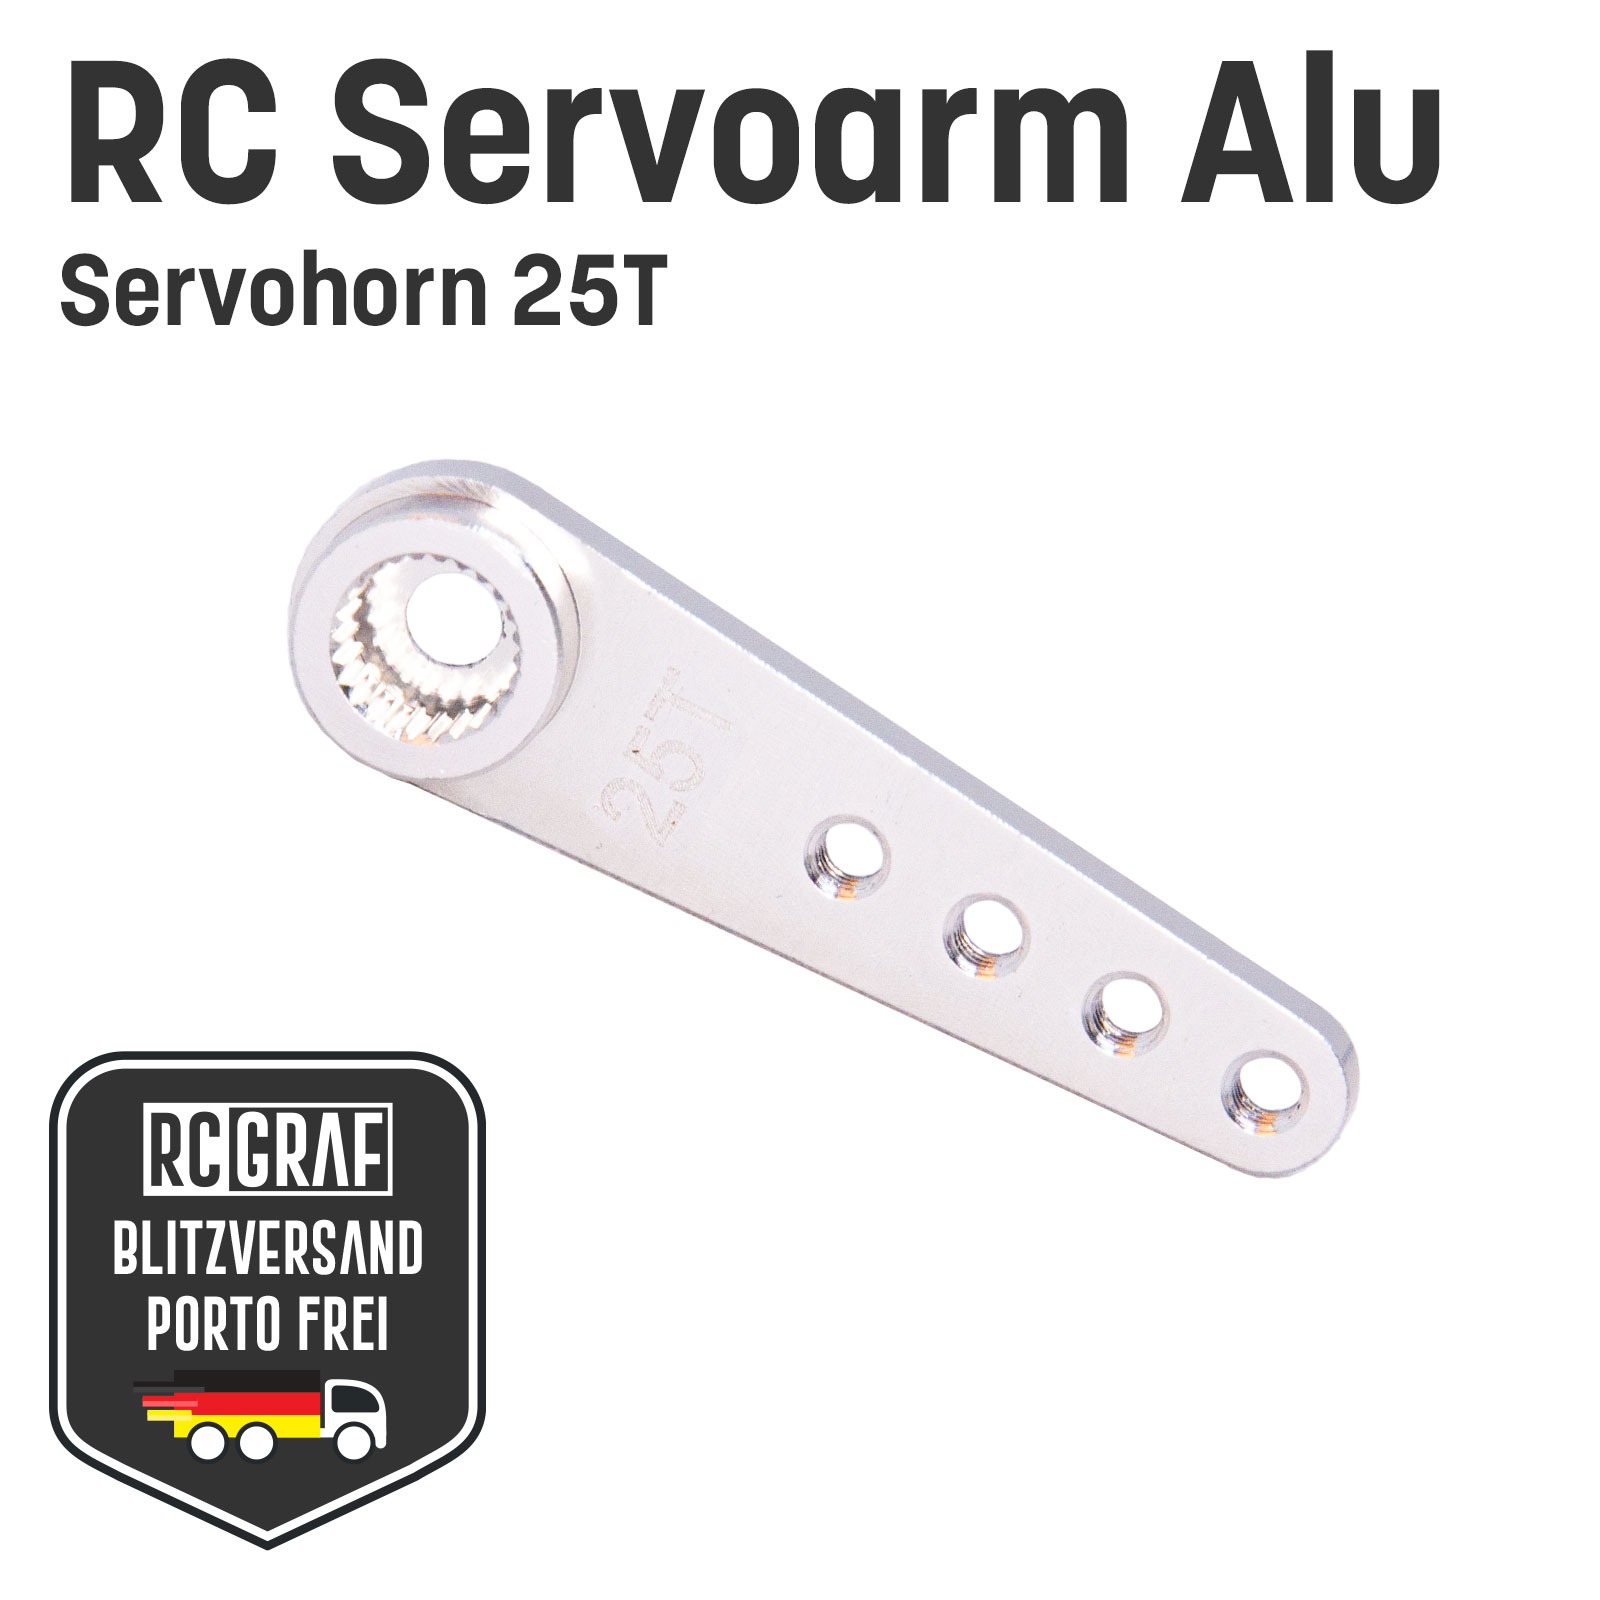 RC Servoarm Servohorn 25T Servohebel Alu Silber